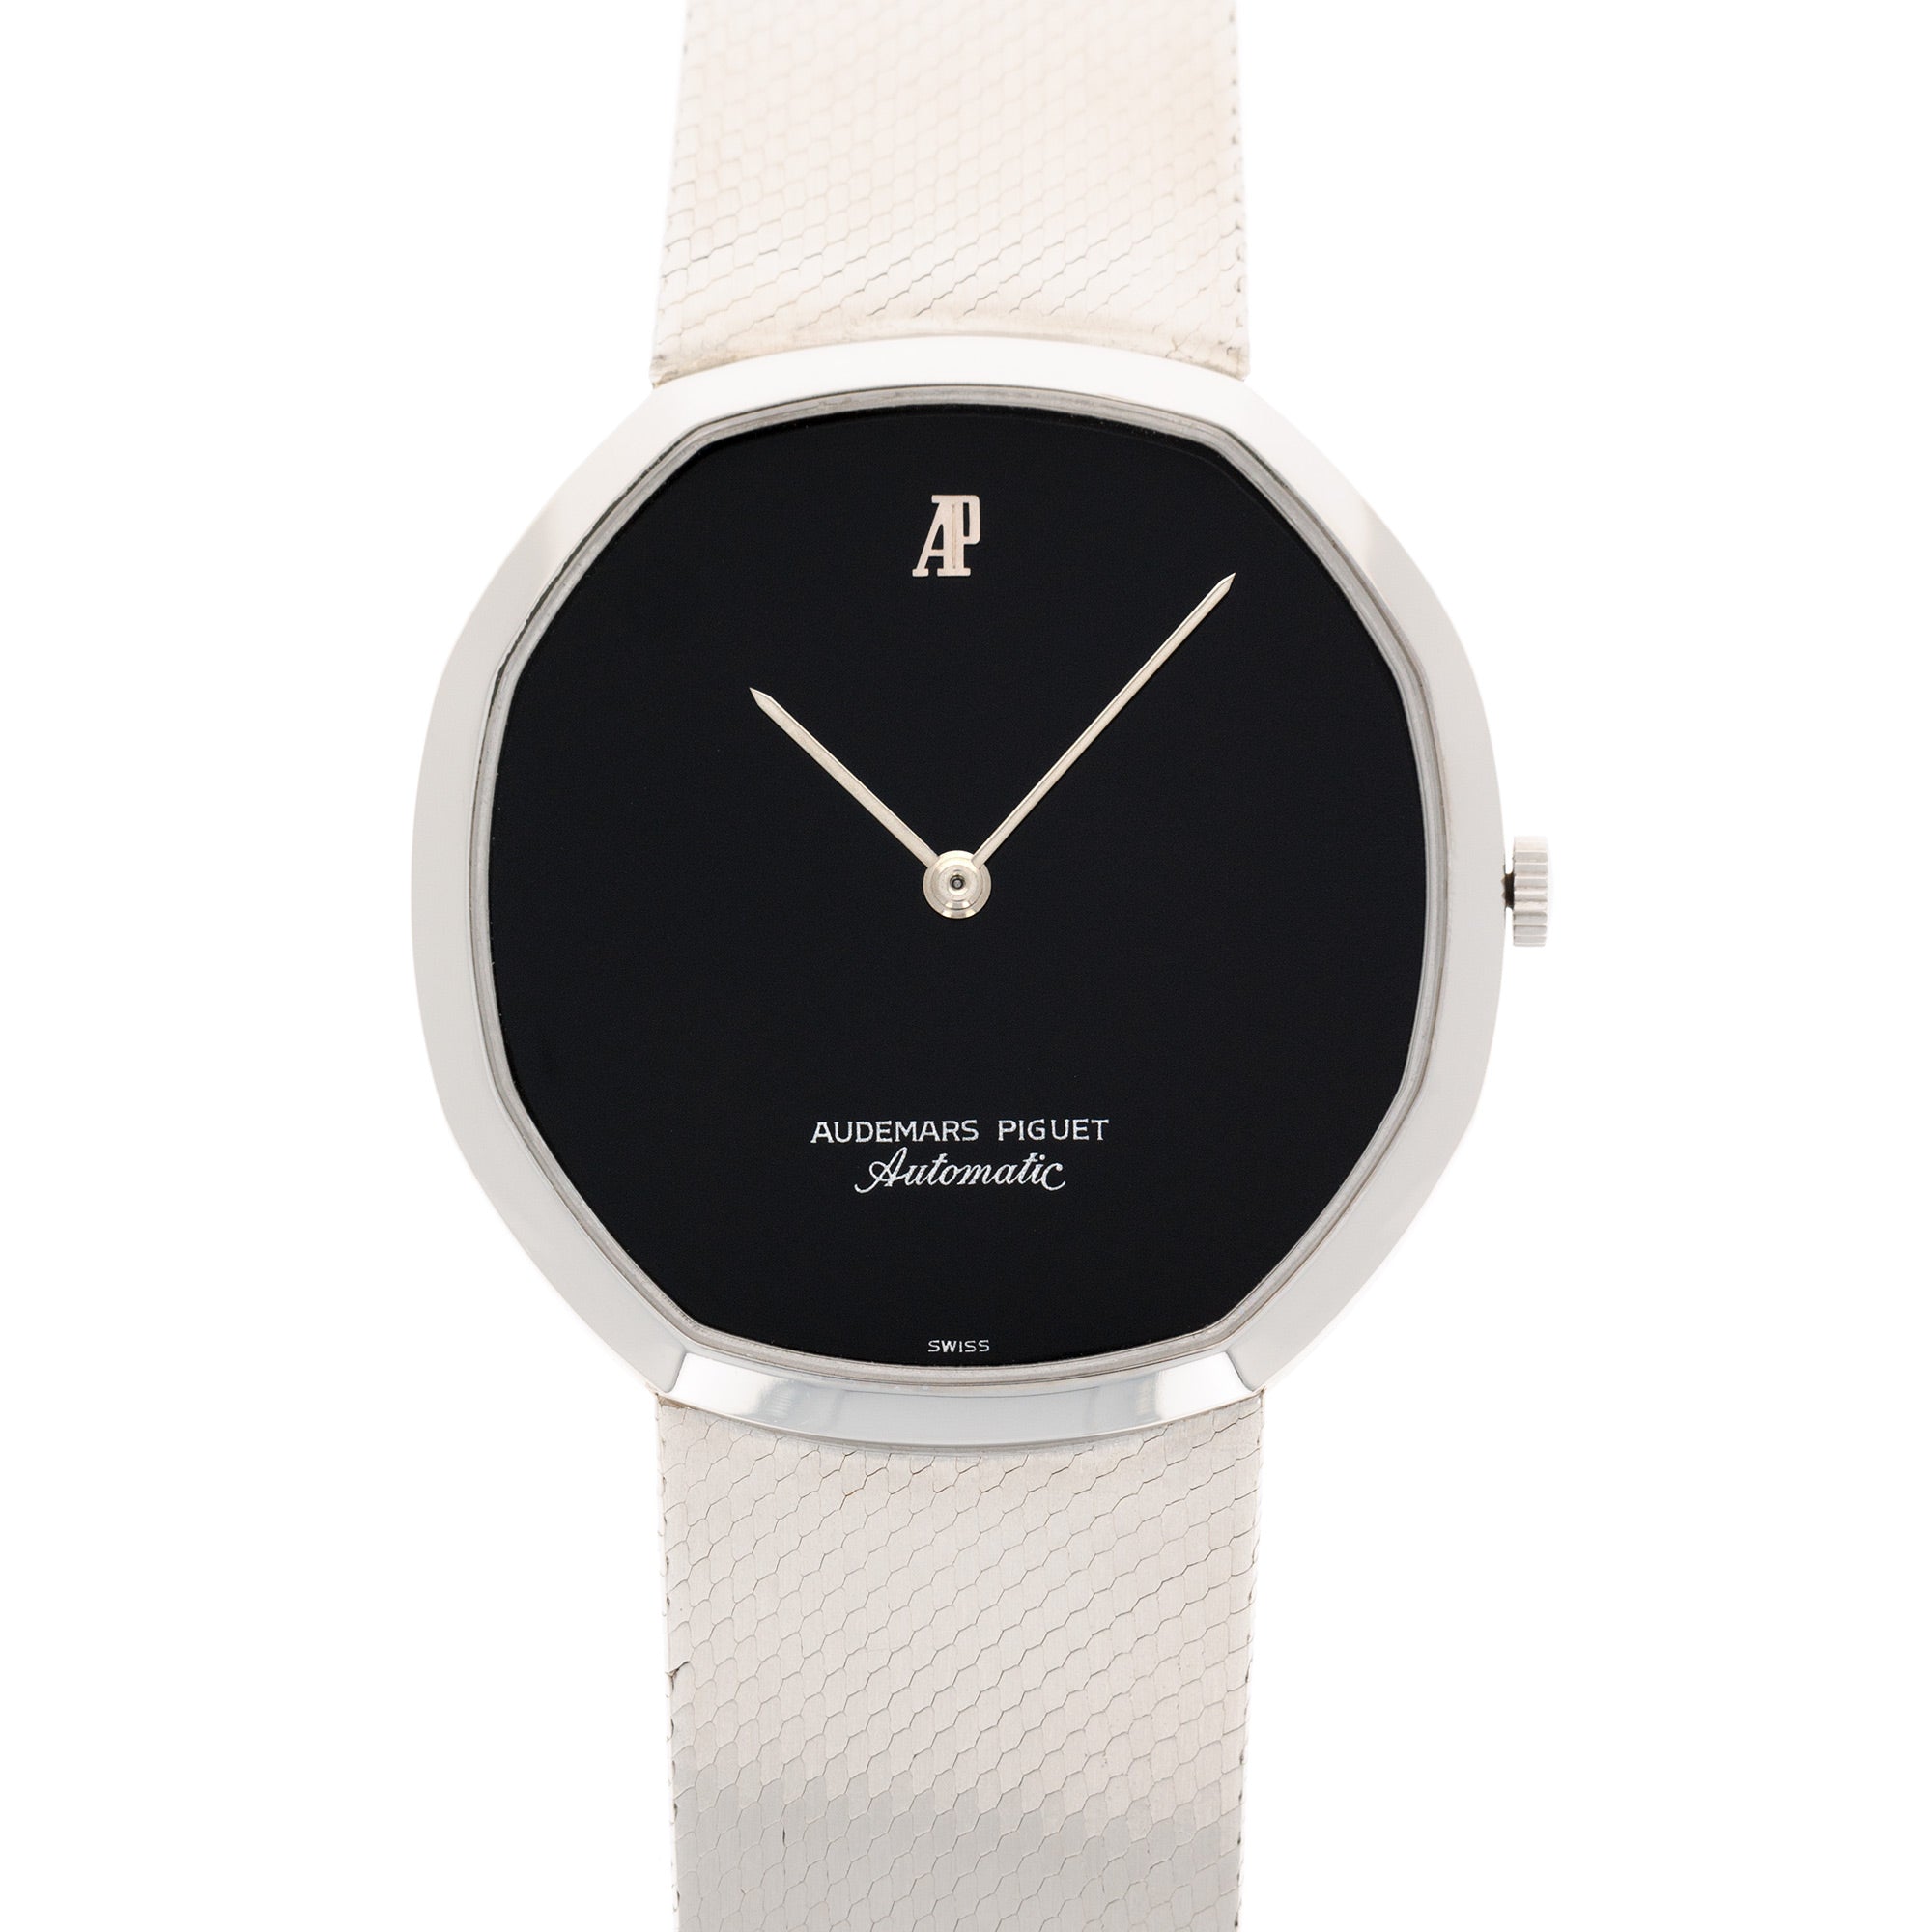 Audemars Piguet - Audemars Piguet Steel Automatic Octagonal Watch Ref. 4010 - The Keystone Watches